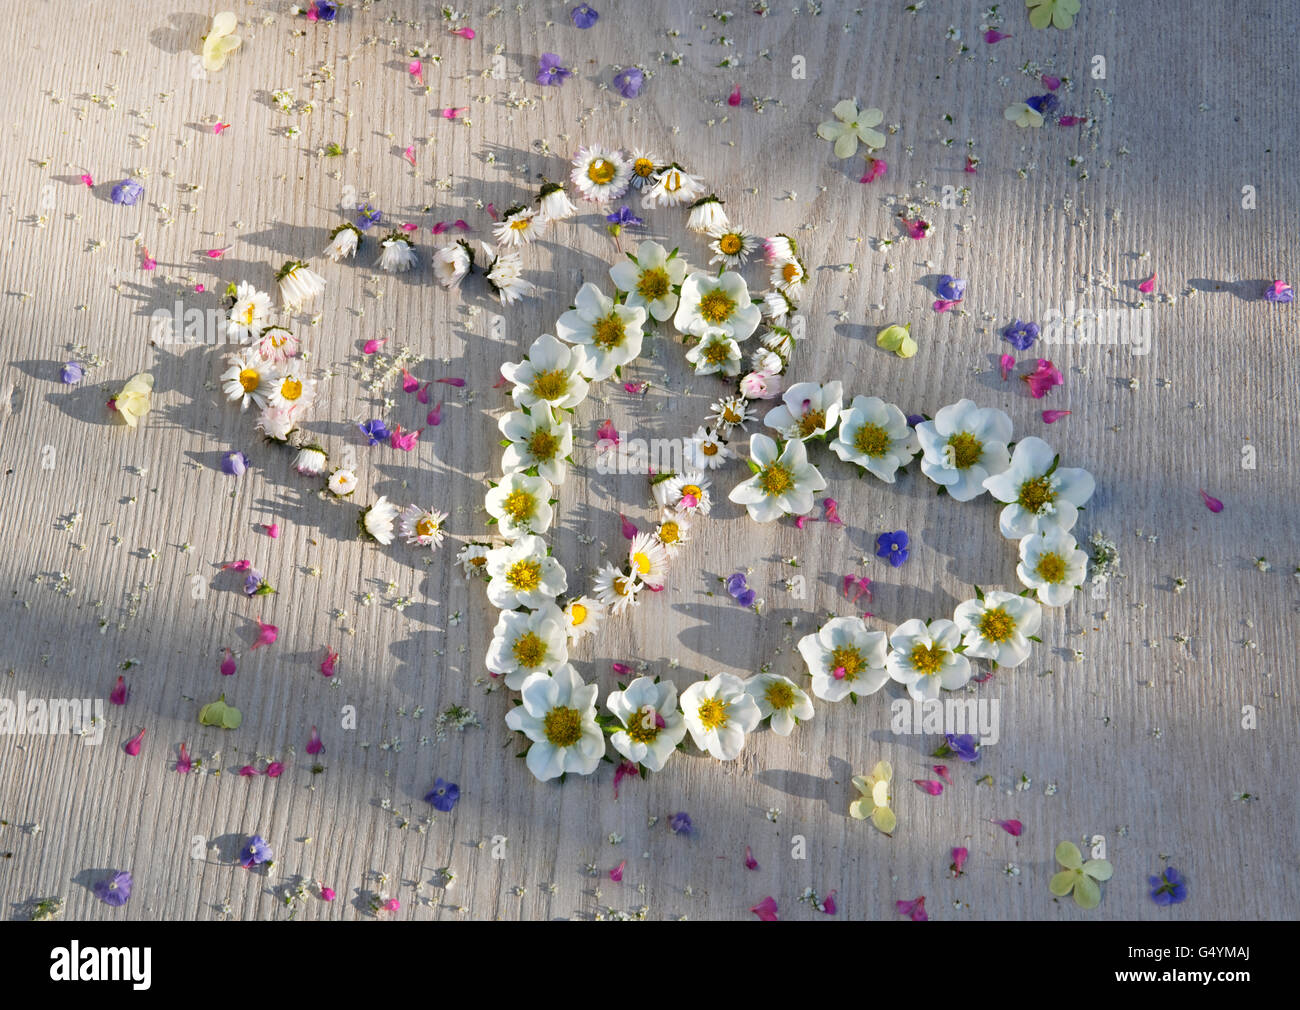 Corazones entrelazados de daisy flores y fresas en placa pintadas de blanco, salpicado de pequeñas flores de verano. Foto de stock